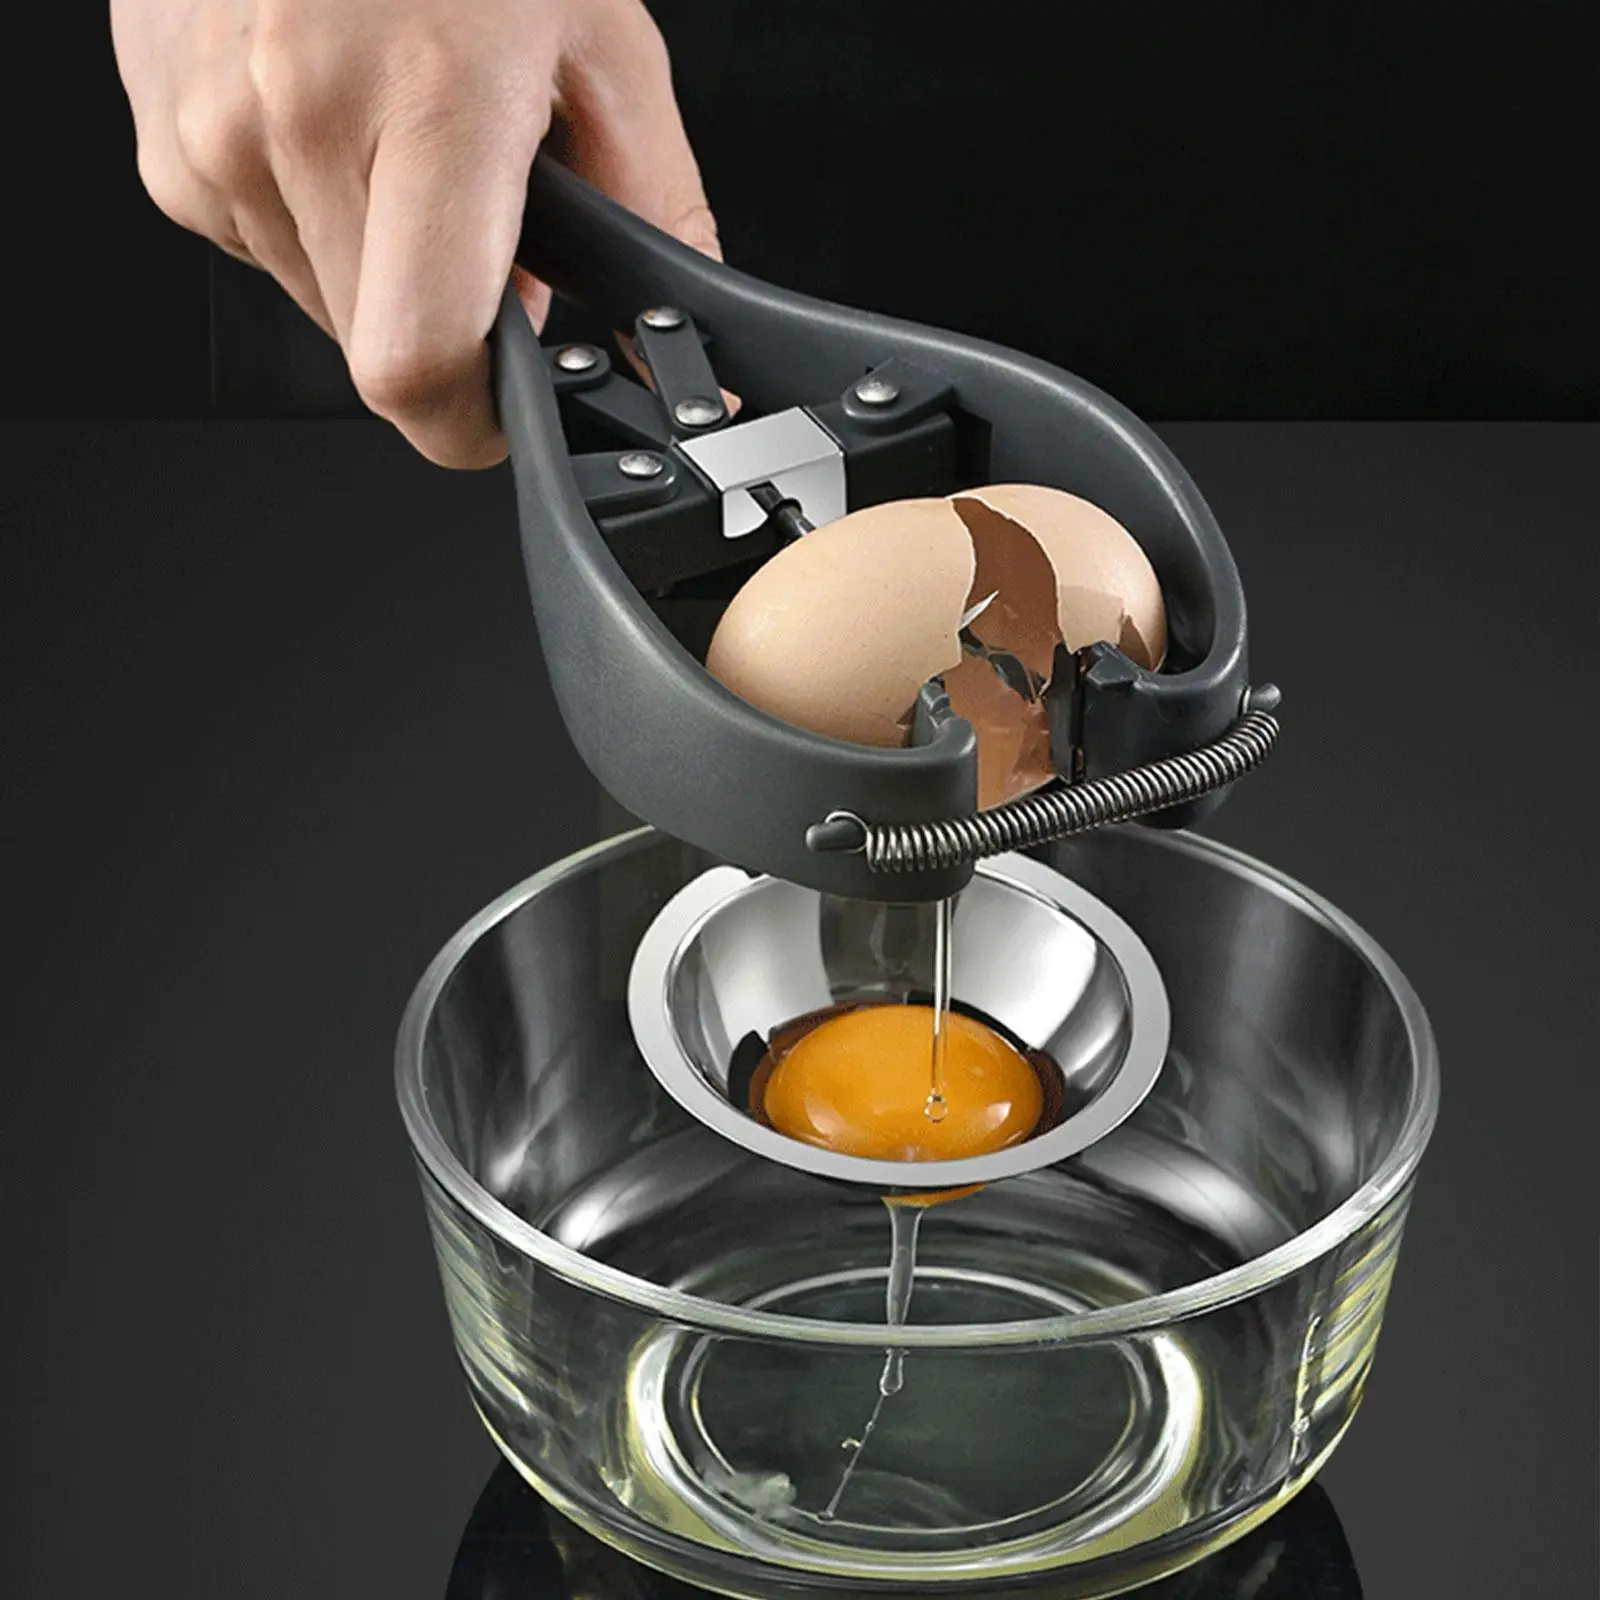 

New Steel Egg Opener Scissors Manual Egg Kitchen Maker Too Eggshell Eggs Opener B6y9 Baking Separator Accessories Tool S1k7